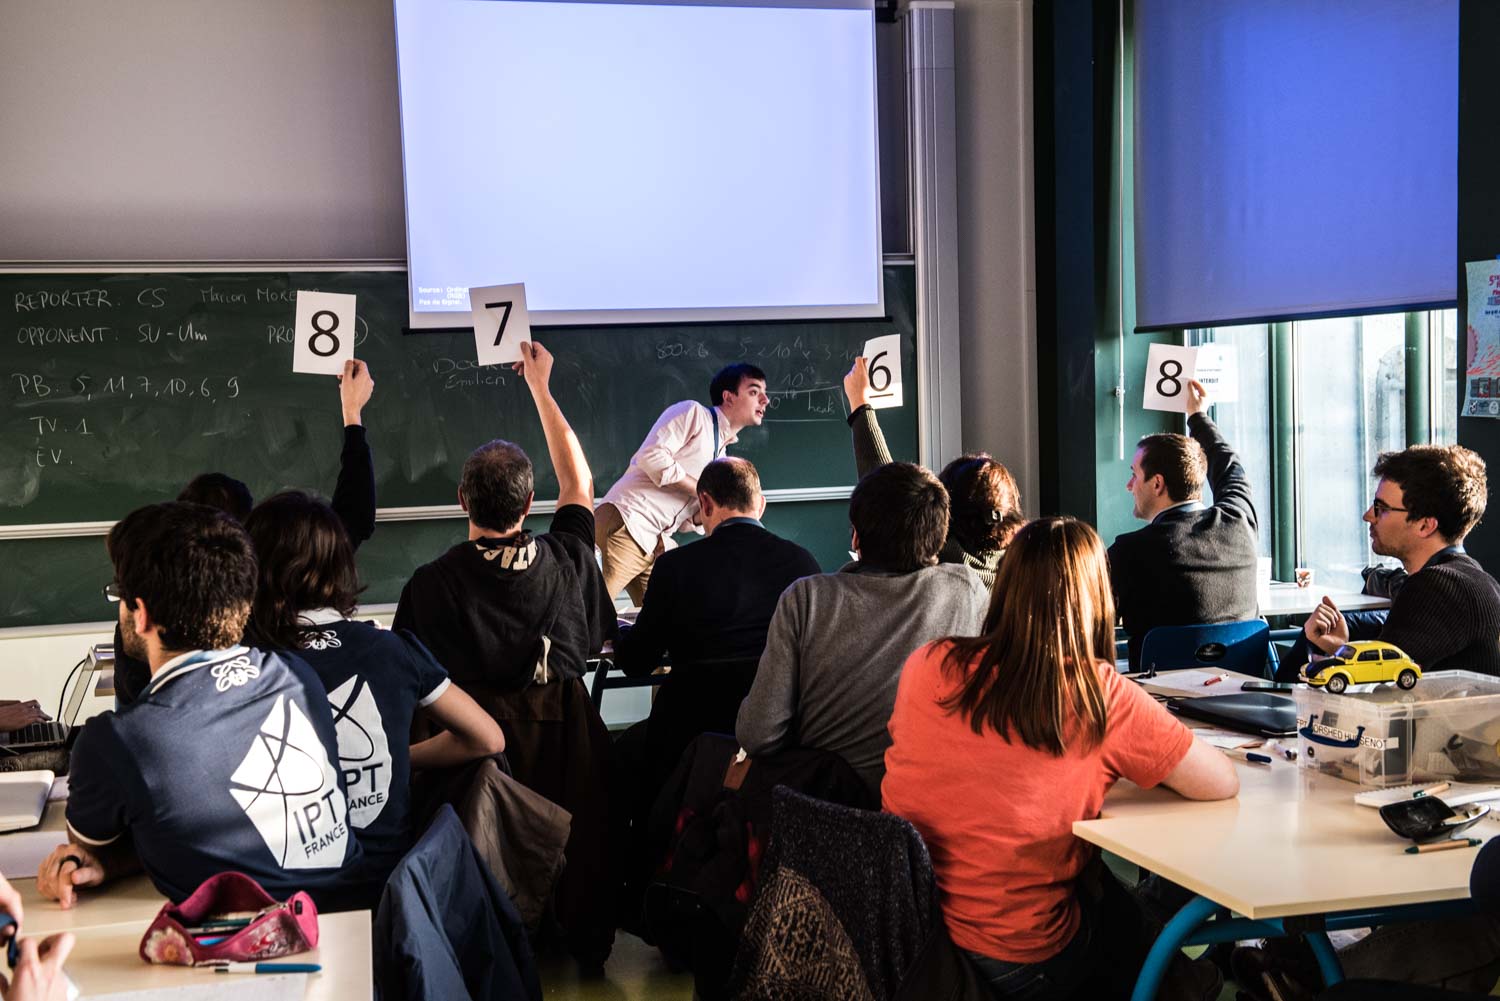 ENS. Département de physique. 5 édition de "The french Physicists Tournament" une compétition par équipe entre étudiants en physique des écoles et universités françaises est organisée chaque année à l'ENS.